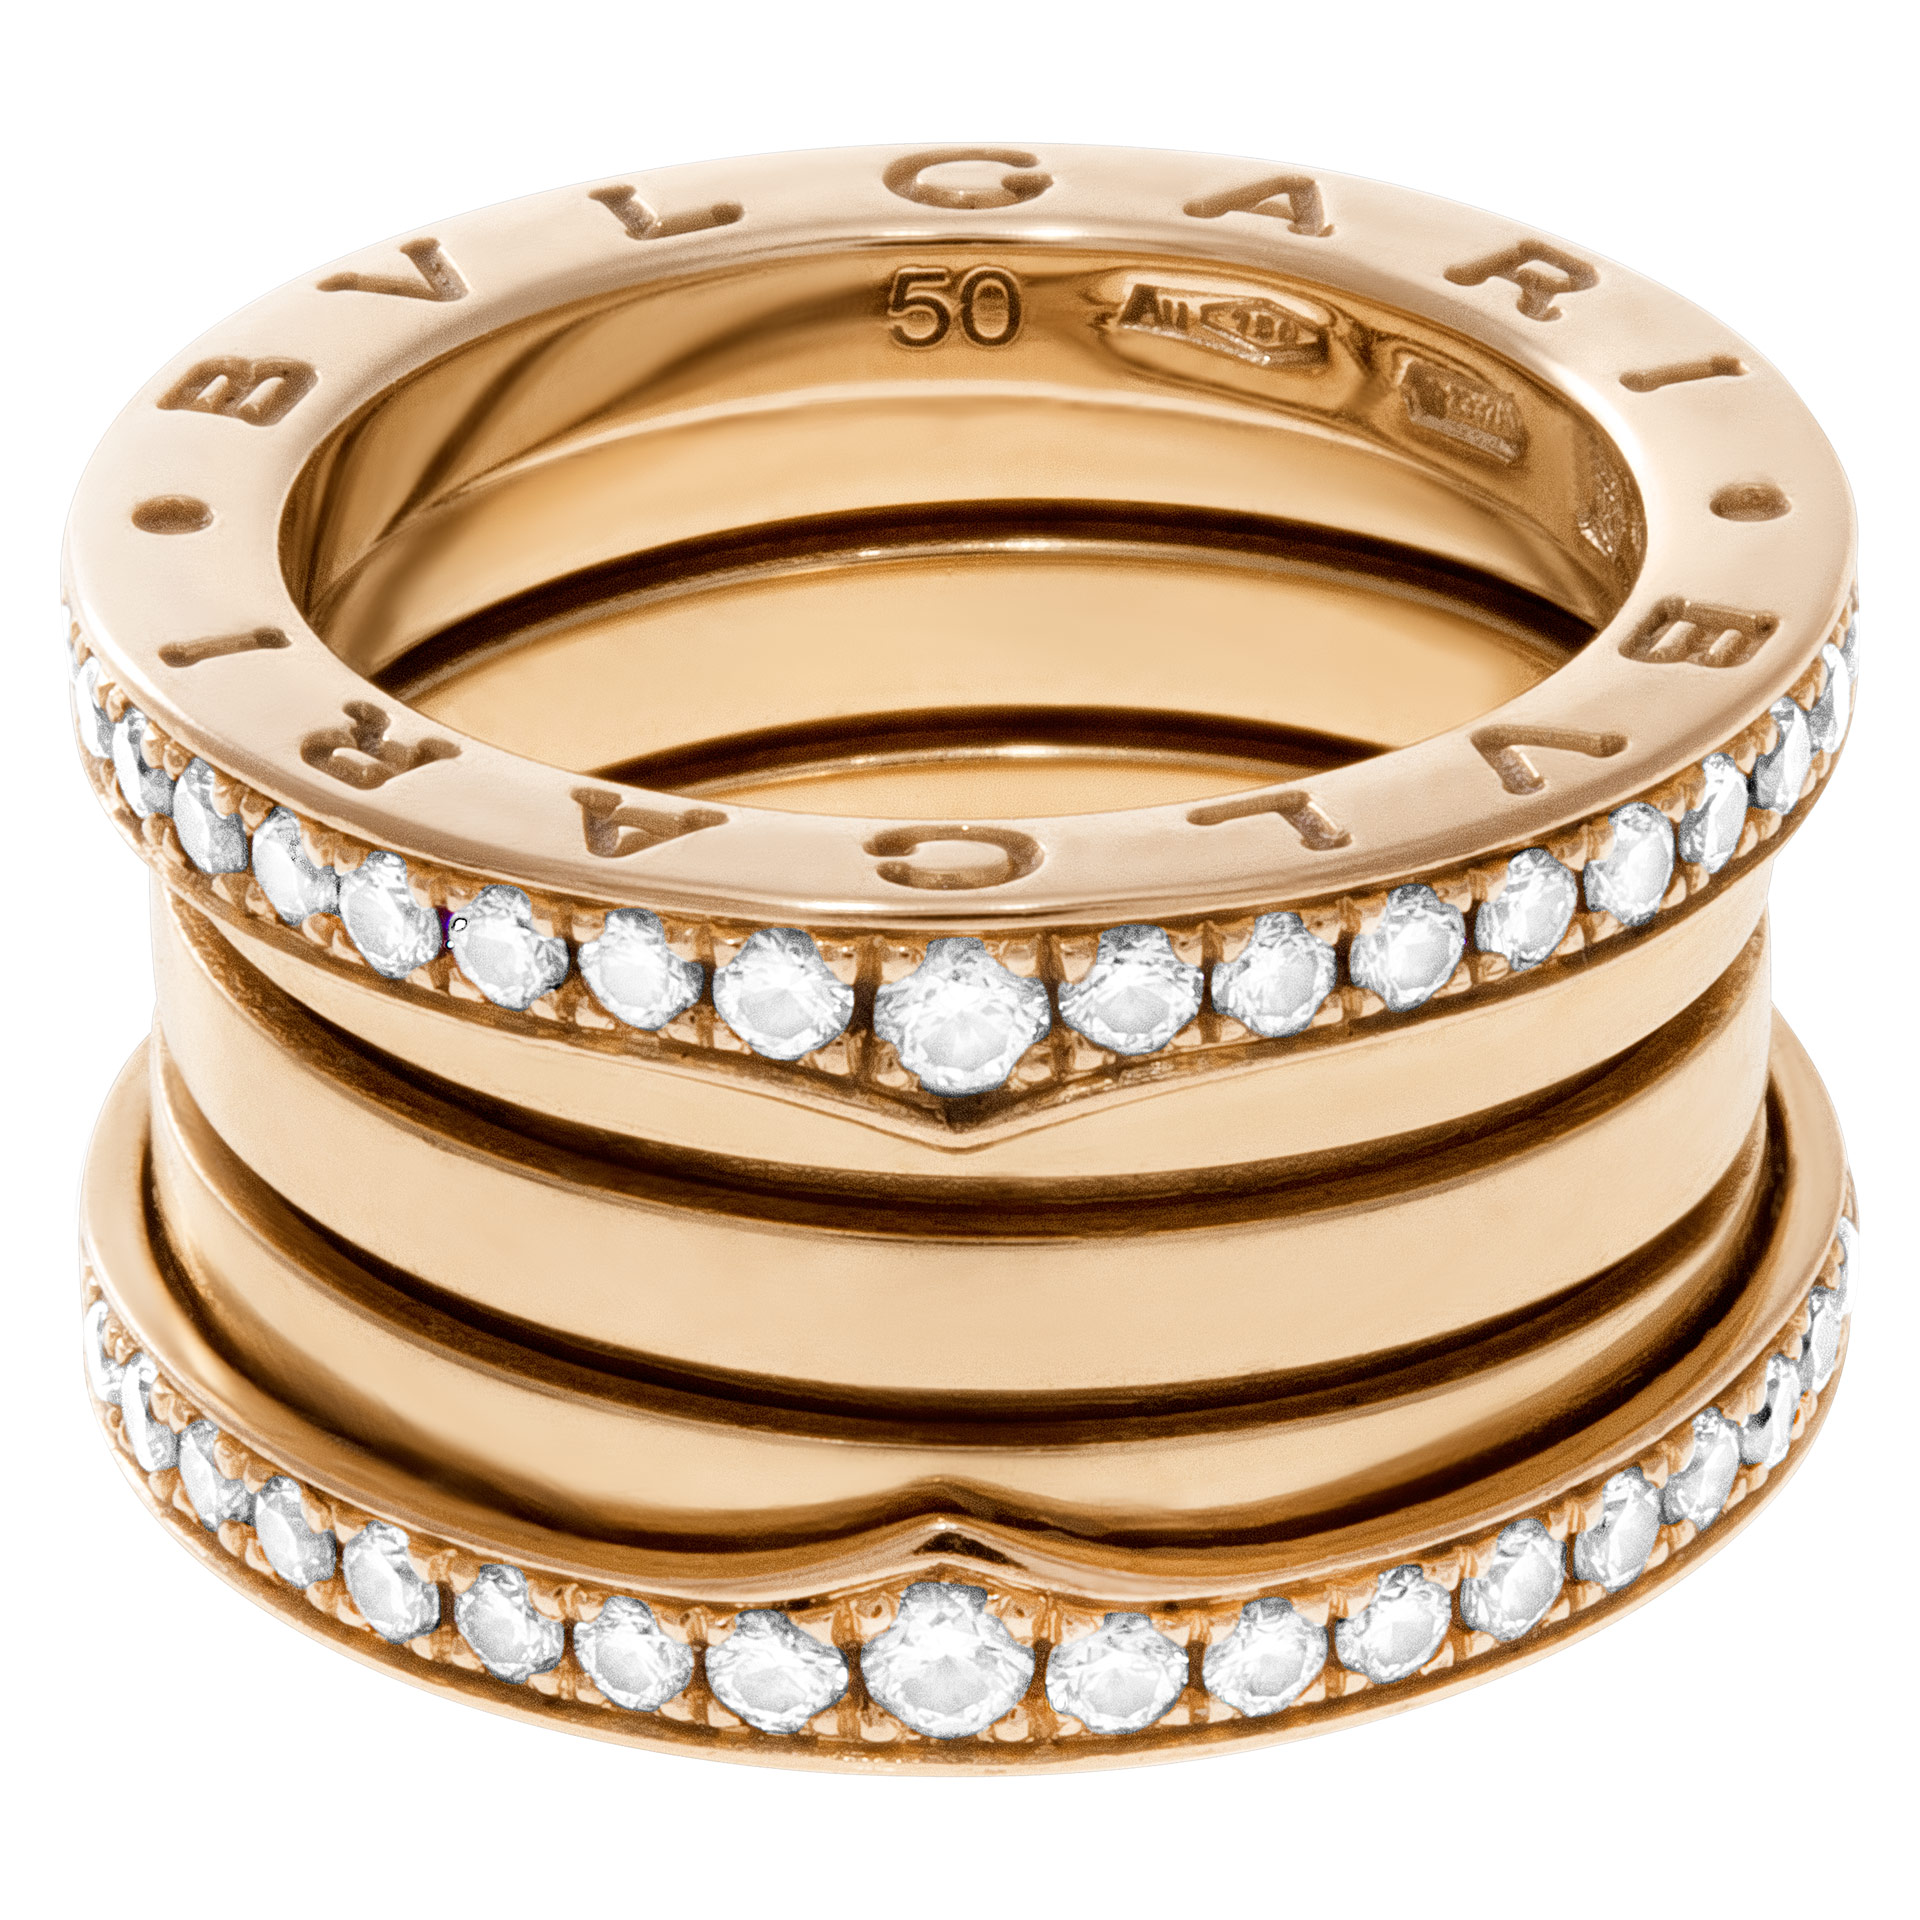 bvlgari rose gold diamond ring